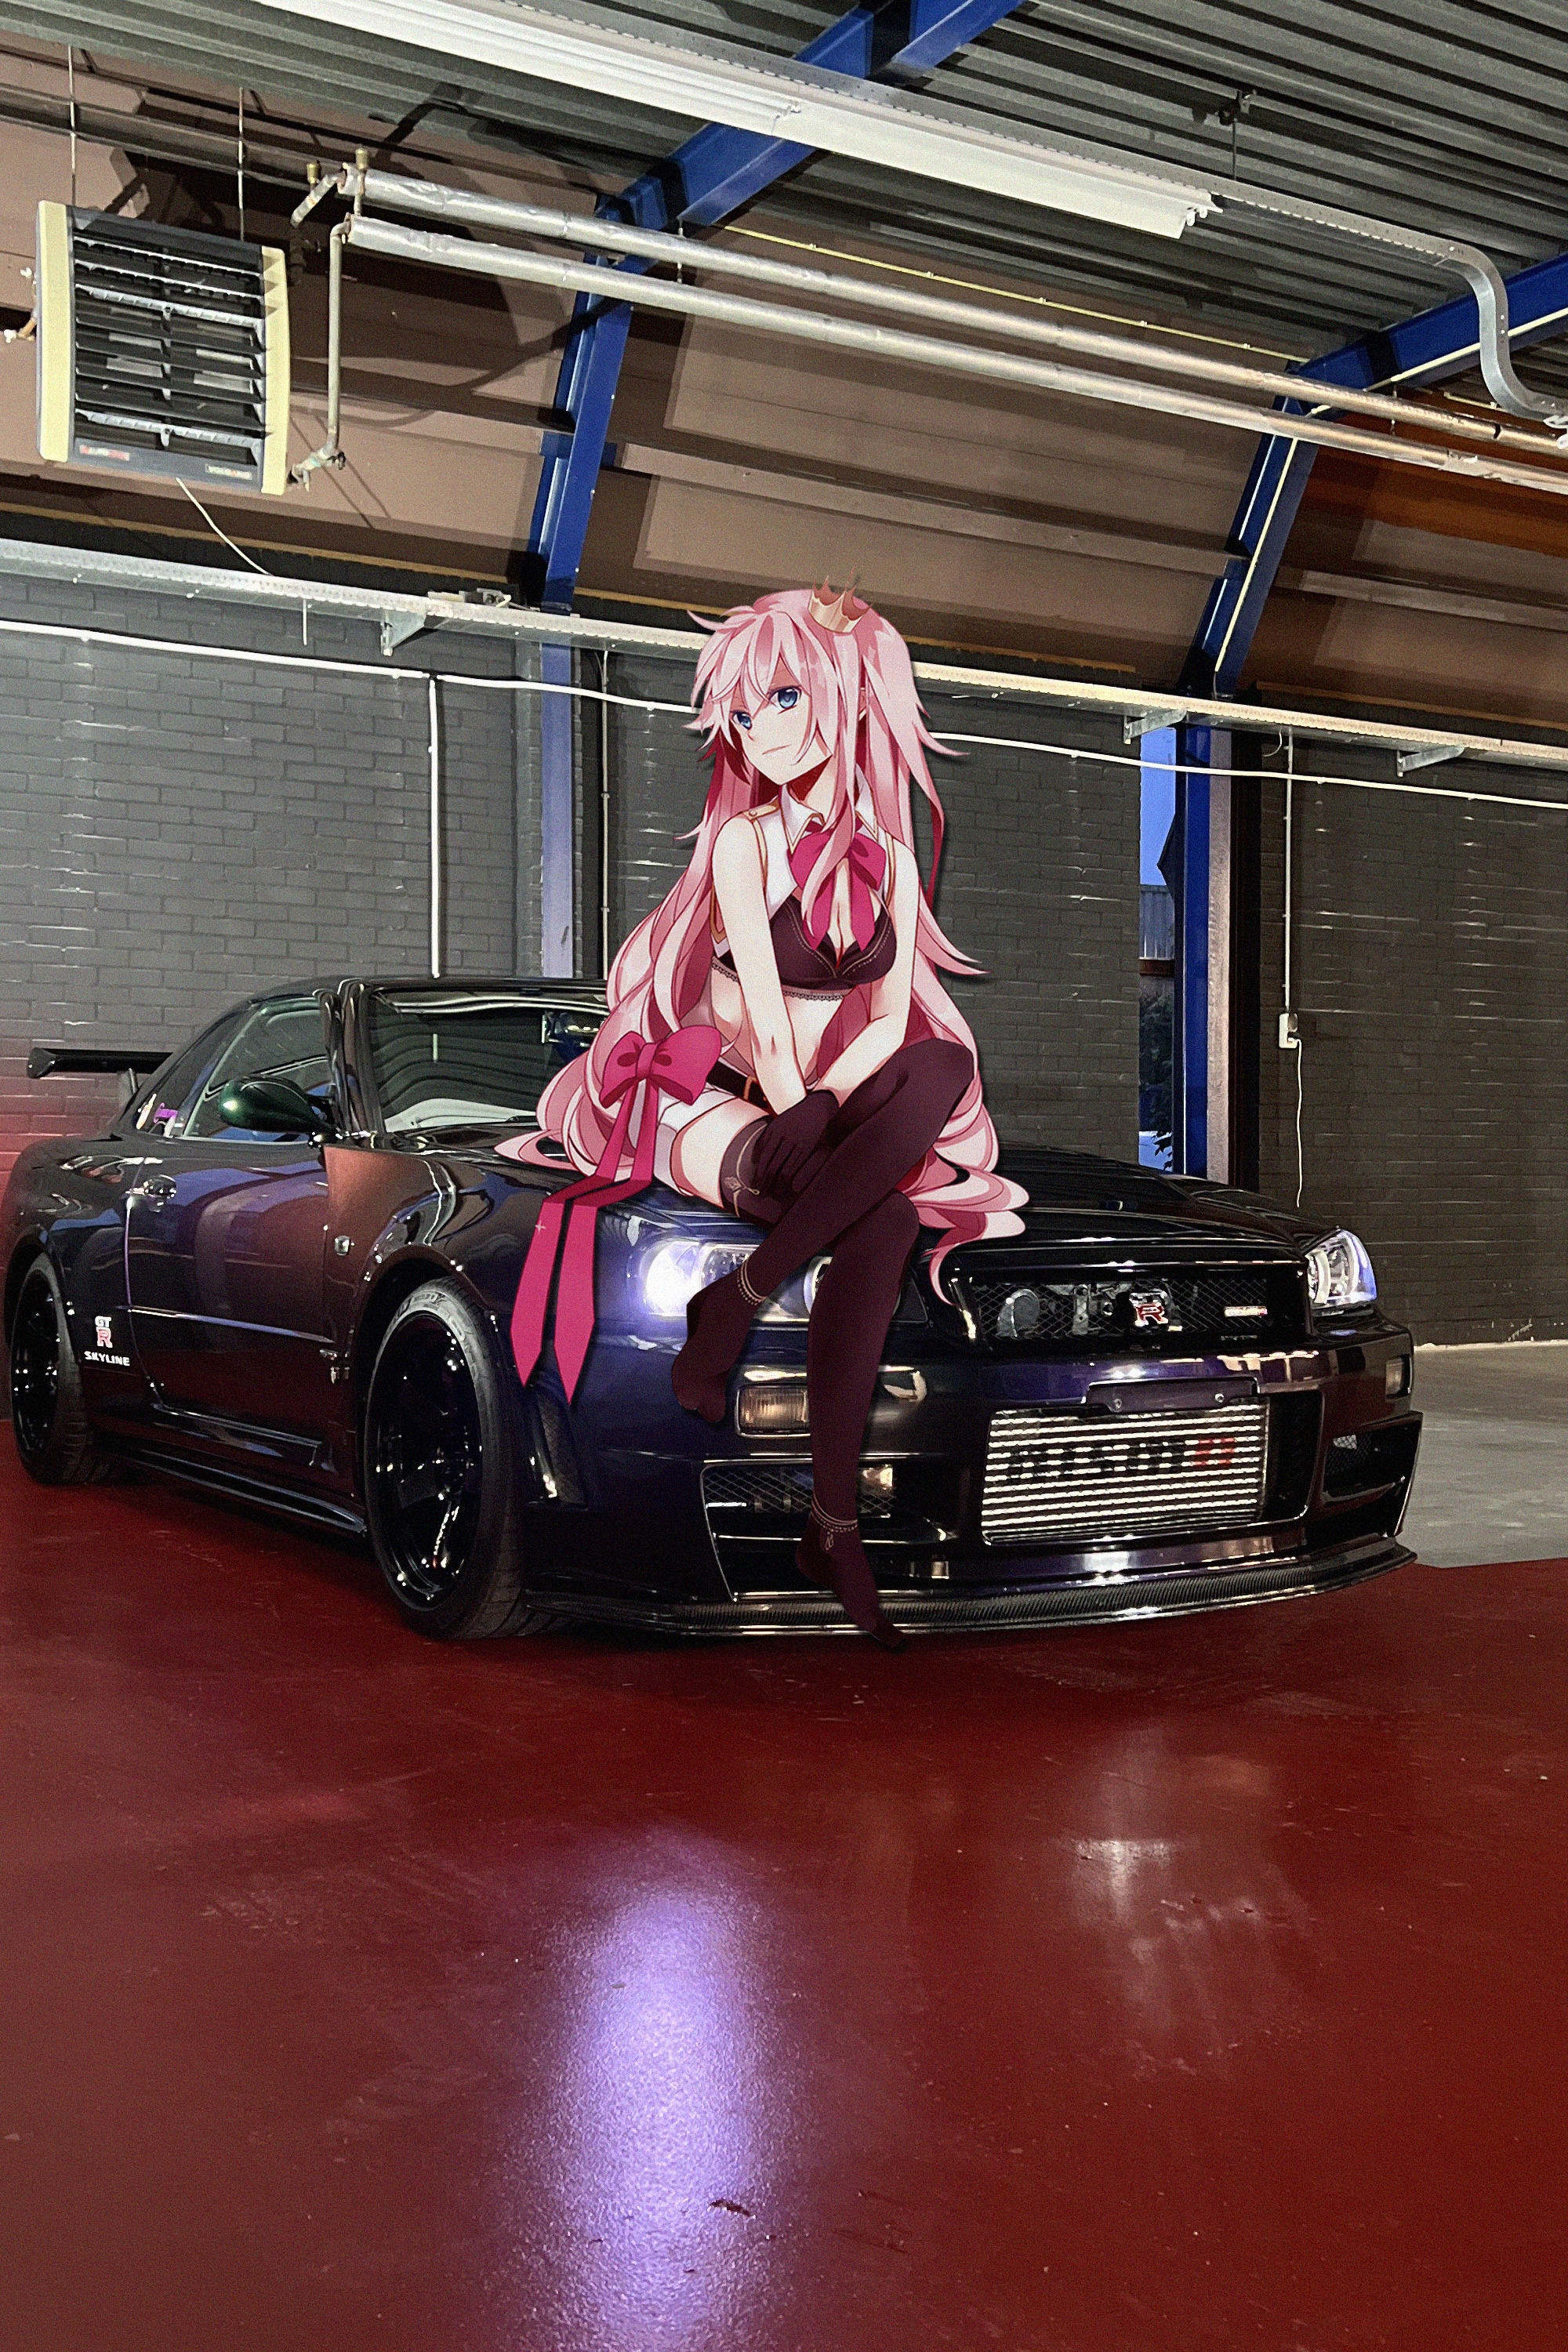 Anime 2000x3000 Nissan Skyline R34 anime girls Japanese cars car animeirl